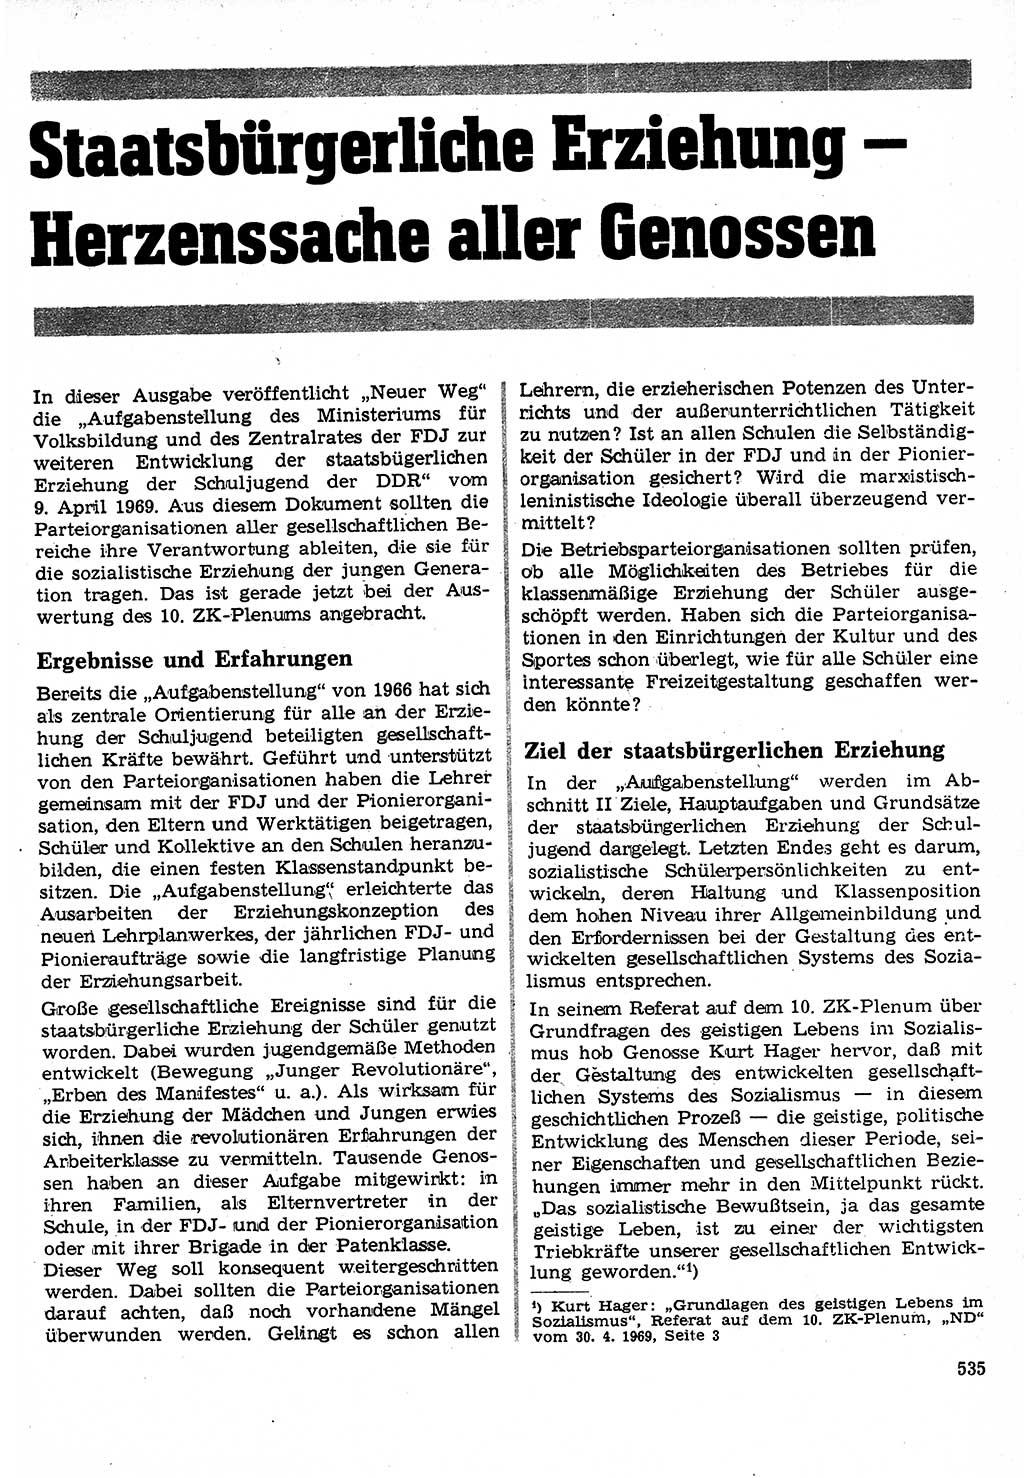 Neuer Weg (NW), Organ des Zentralkomitees (ZK) der SED (Sozialistische Einheitspartei Deutschlands) für Fragen des Parteilebens, 24. Jahrgang [Deutsche Demokratische Republik (DDR)] 1969, Seite 535 (NW ZK SED DDR 1969, S. 535)